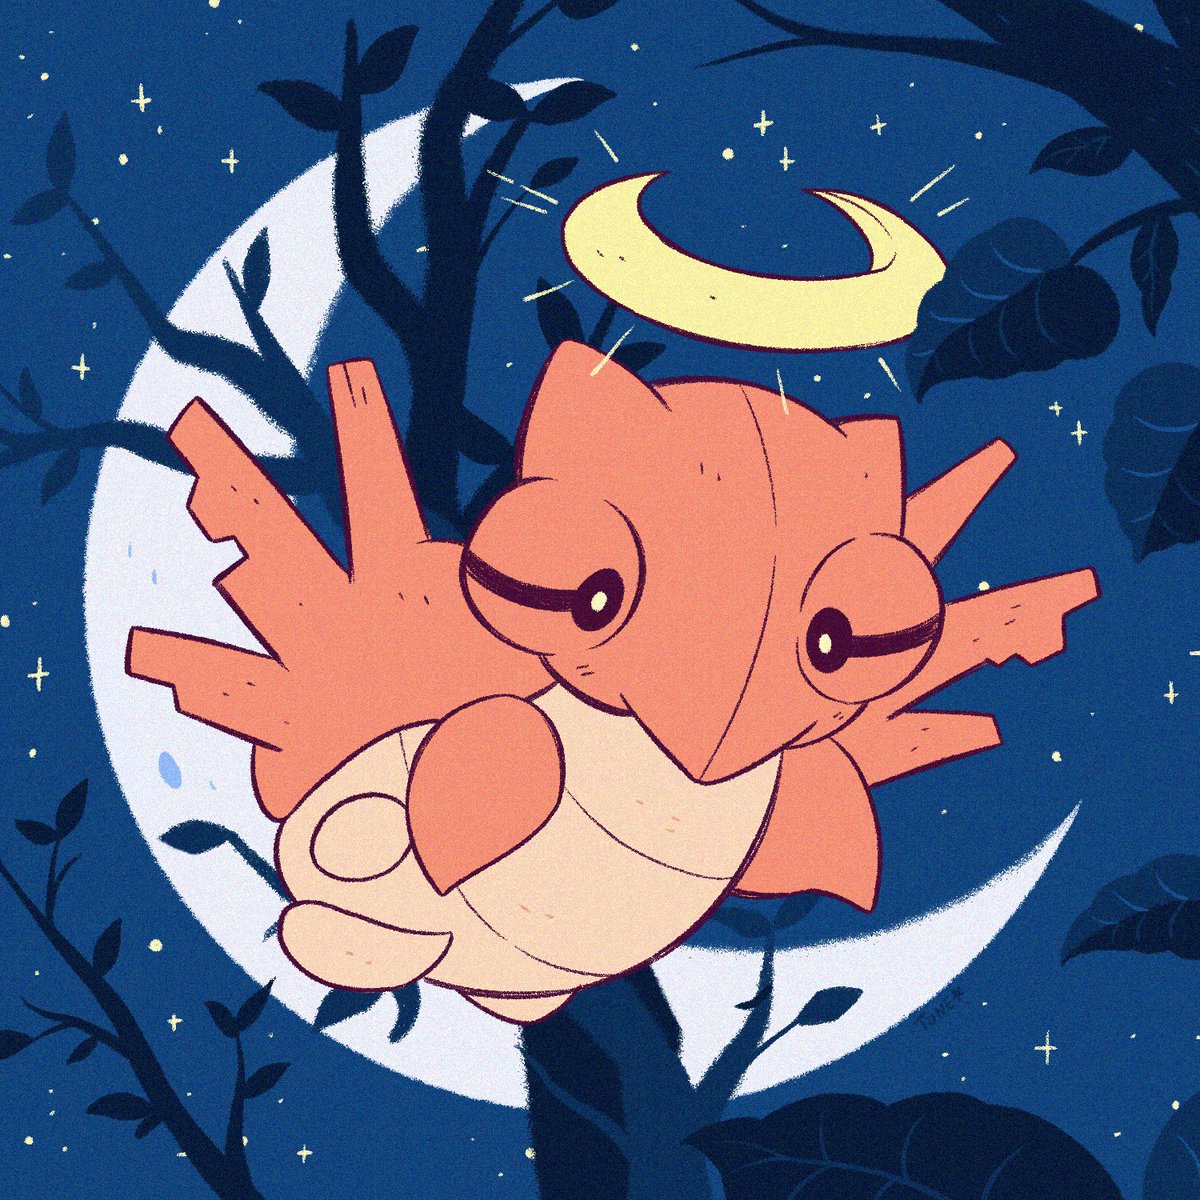 「A spooky lil buggo Pokemon... 🌙 」|🦇 Tiny Tone 🔜 Megacon A489 🦇のイラスト